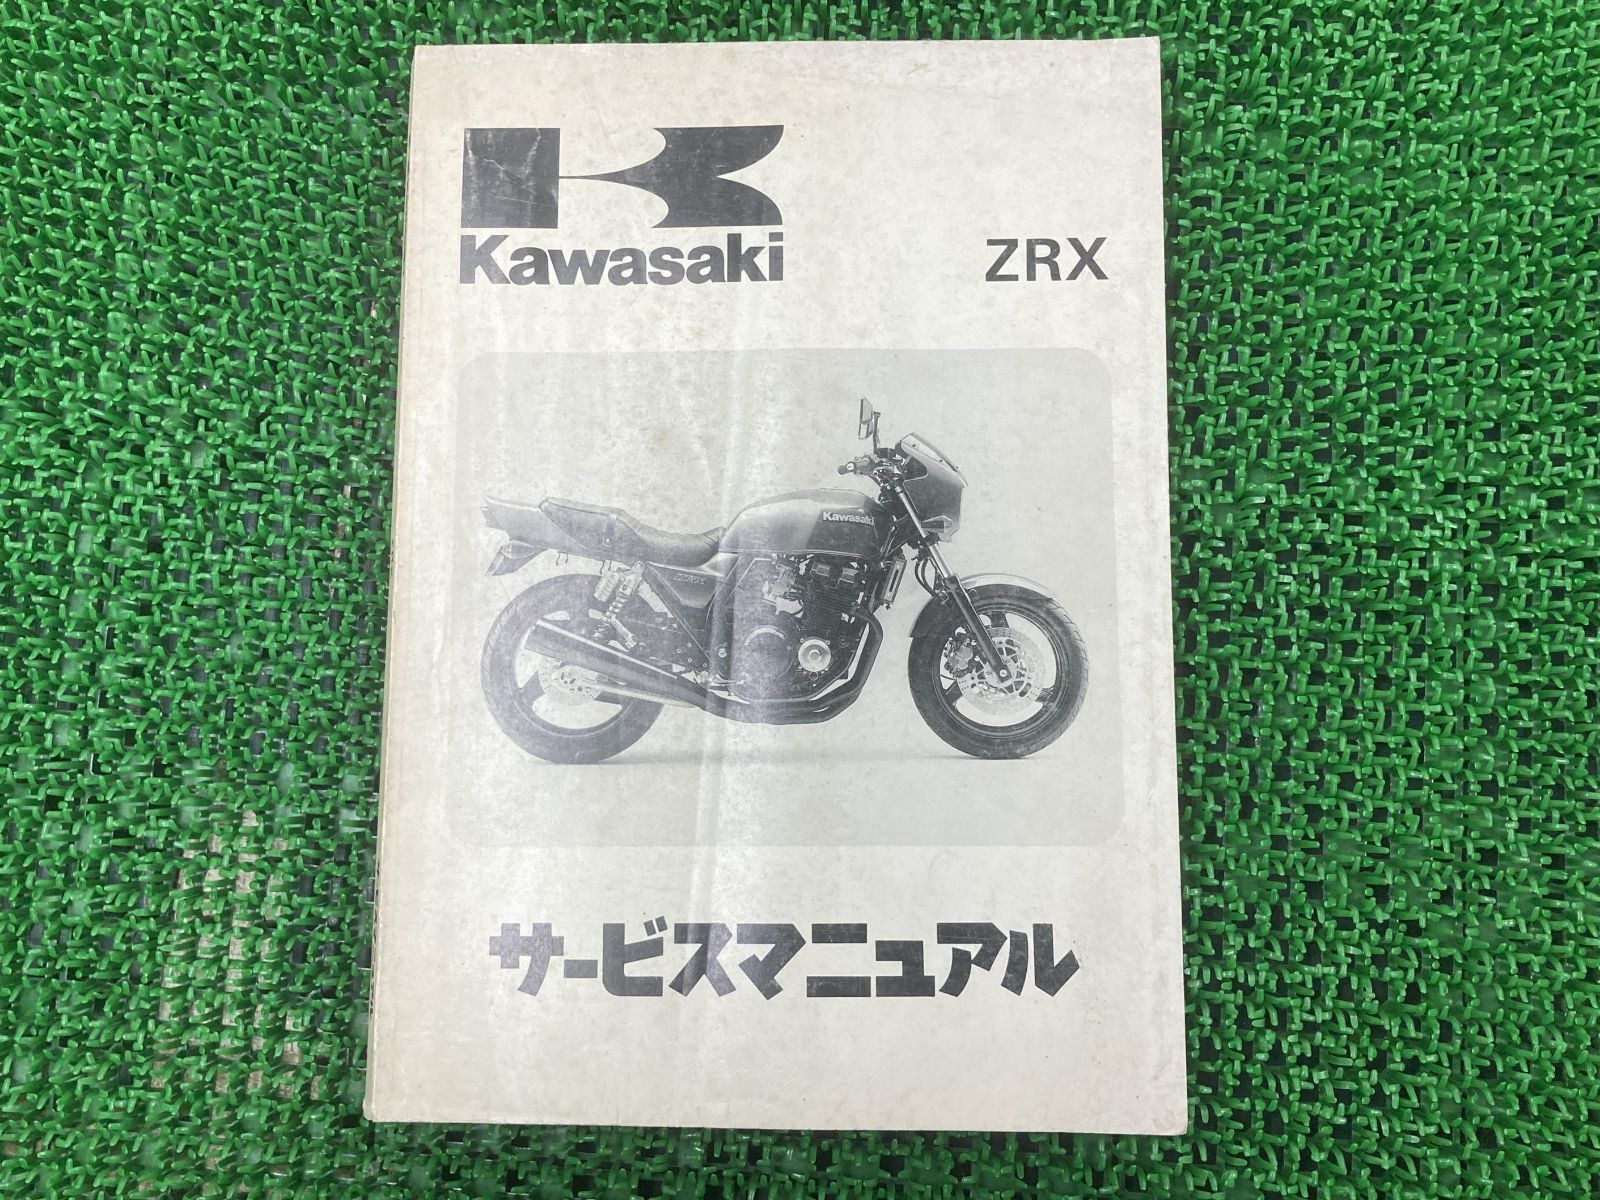 kawasakiサービスマニュアル - カタログ